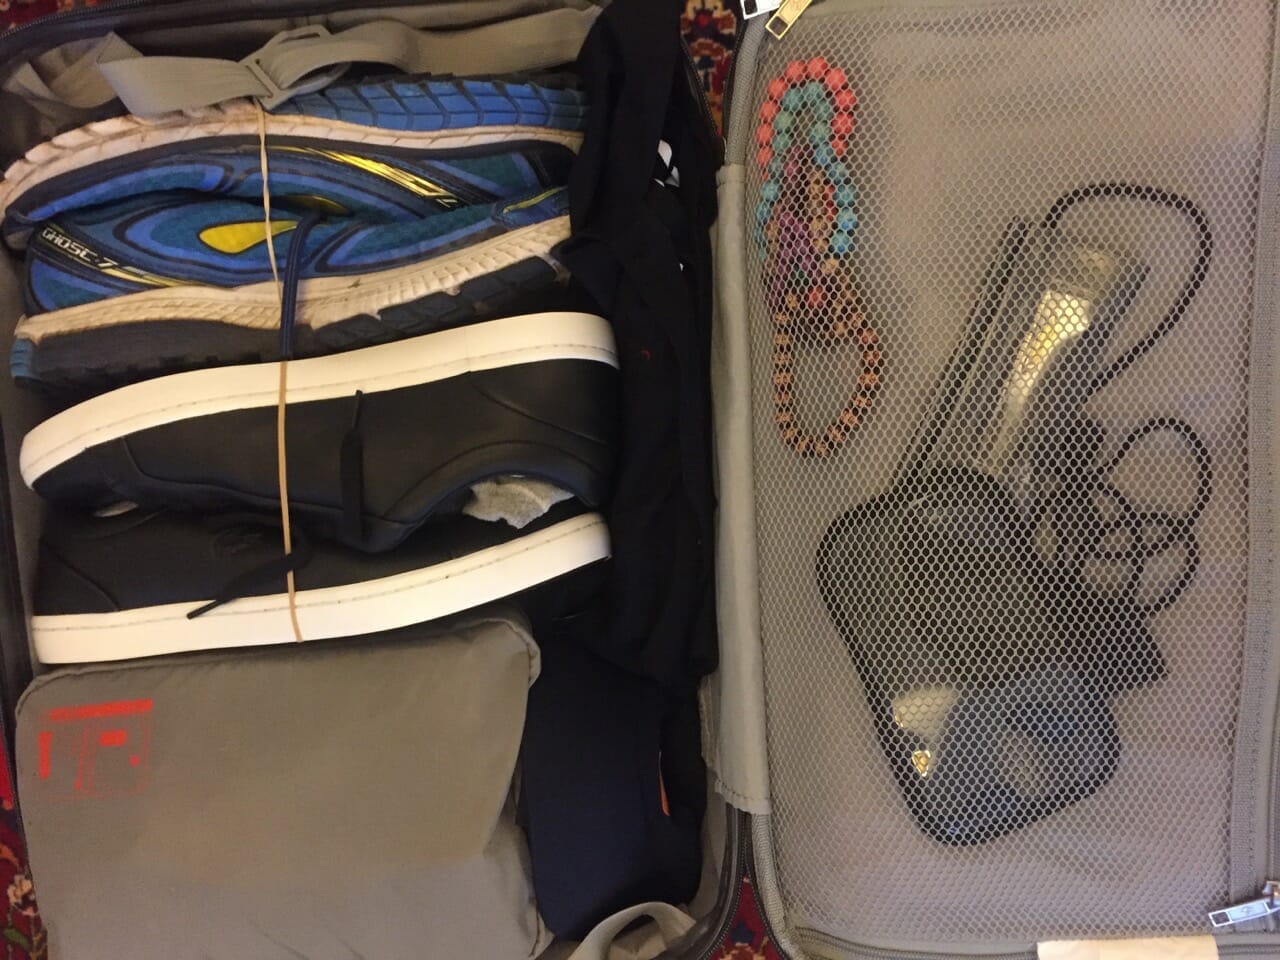 Cómo organizar la maleta de mano - 1 mes de viaje